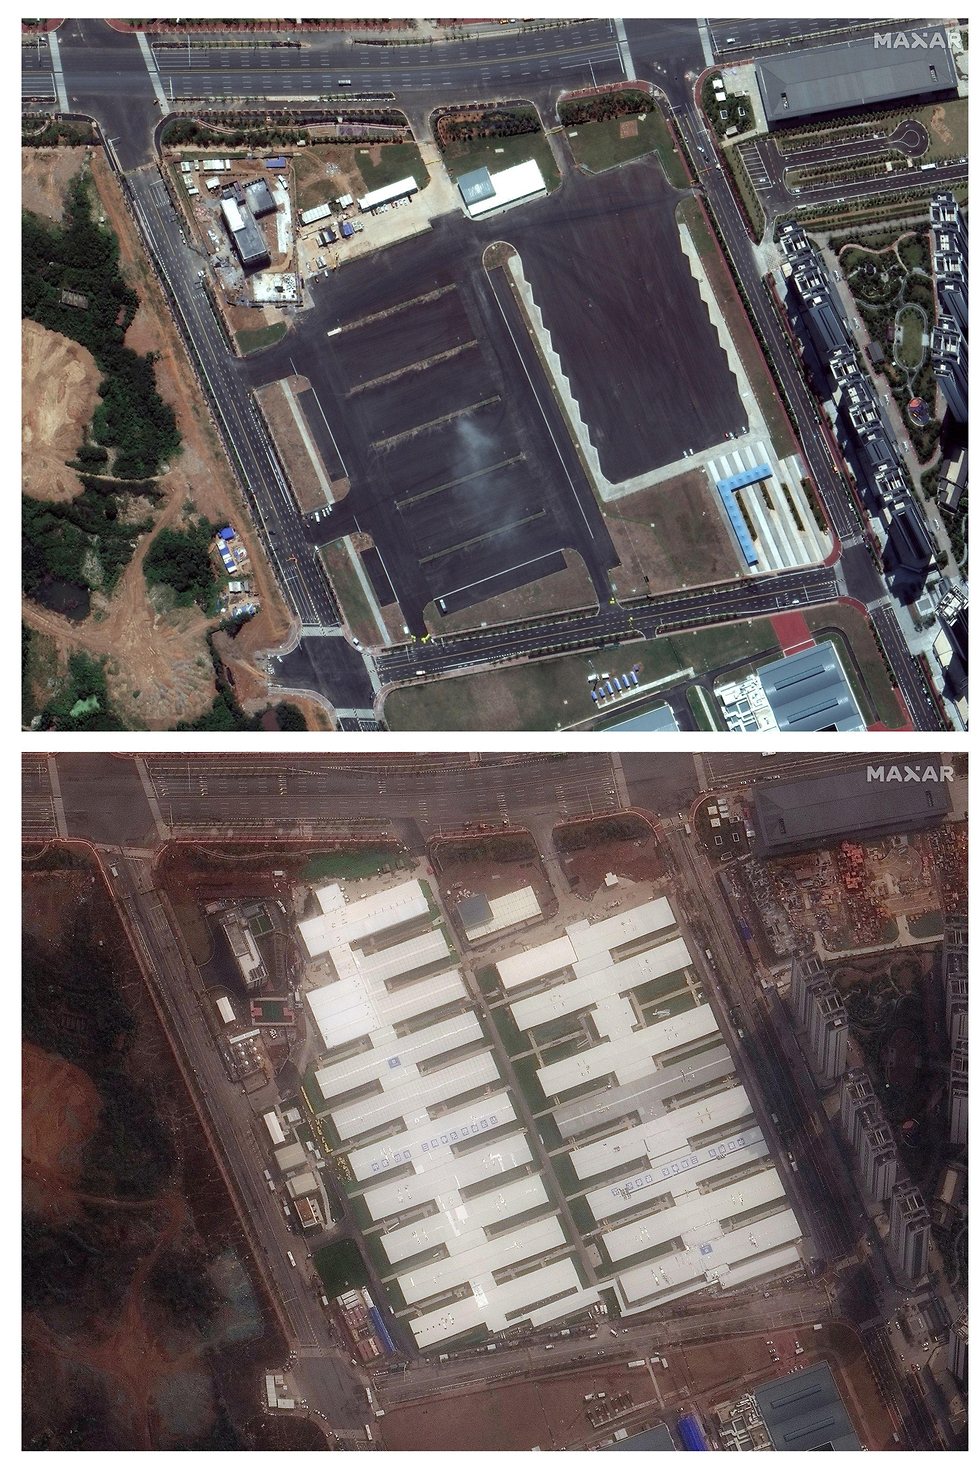 בית חולים חדש ווהאן סין לפני ואחרי התפרצות נגיף קורונה מרץ 2020 אוגוסט 2019 (צילום: רויטרס)